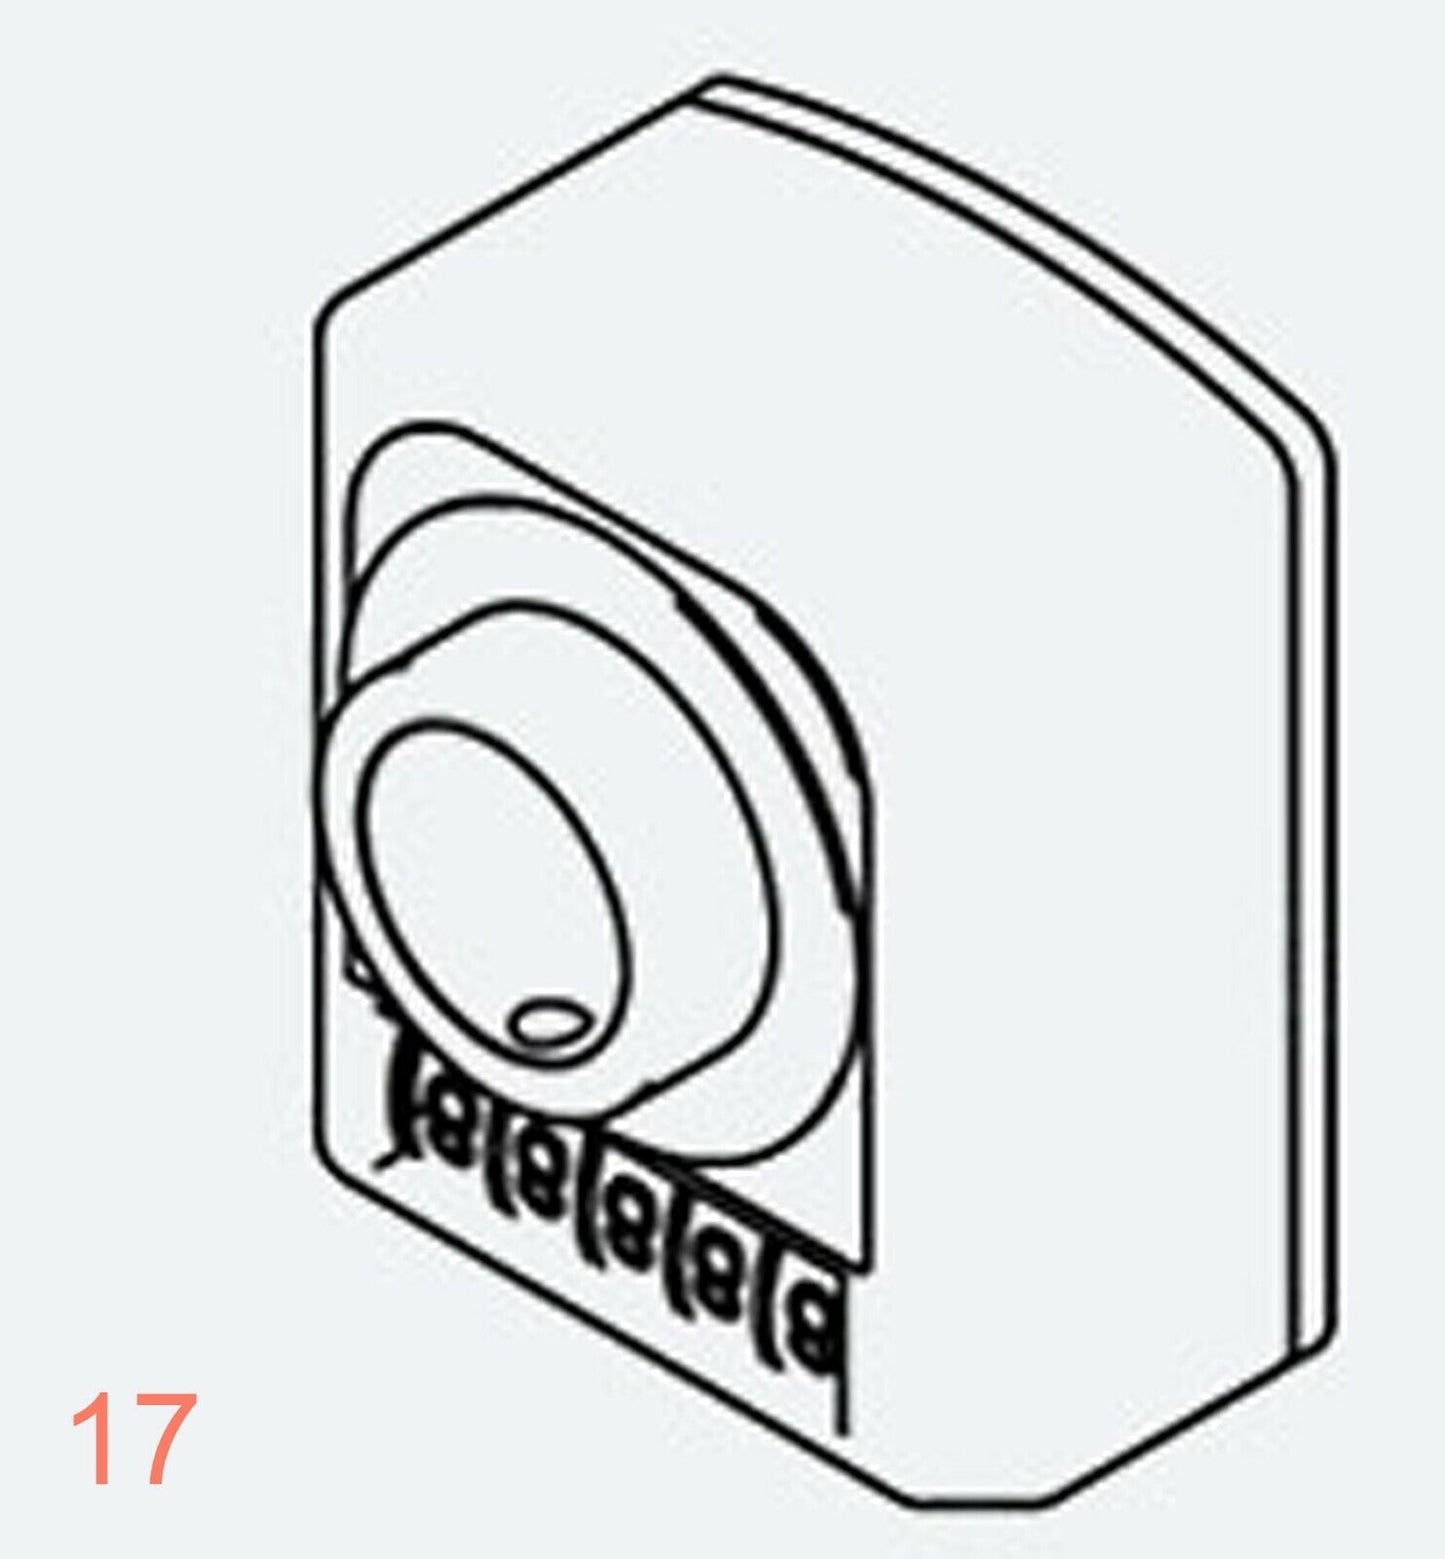 Affichage 0040 Arbre creux 30 mm Indicateur de position numérique Compteur